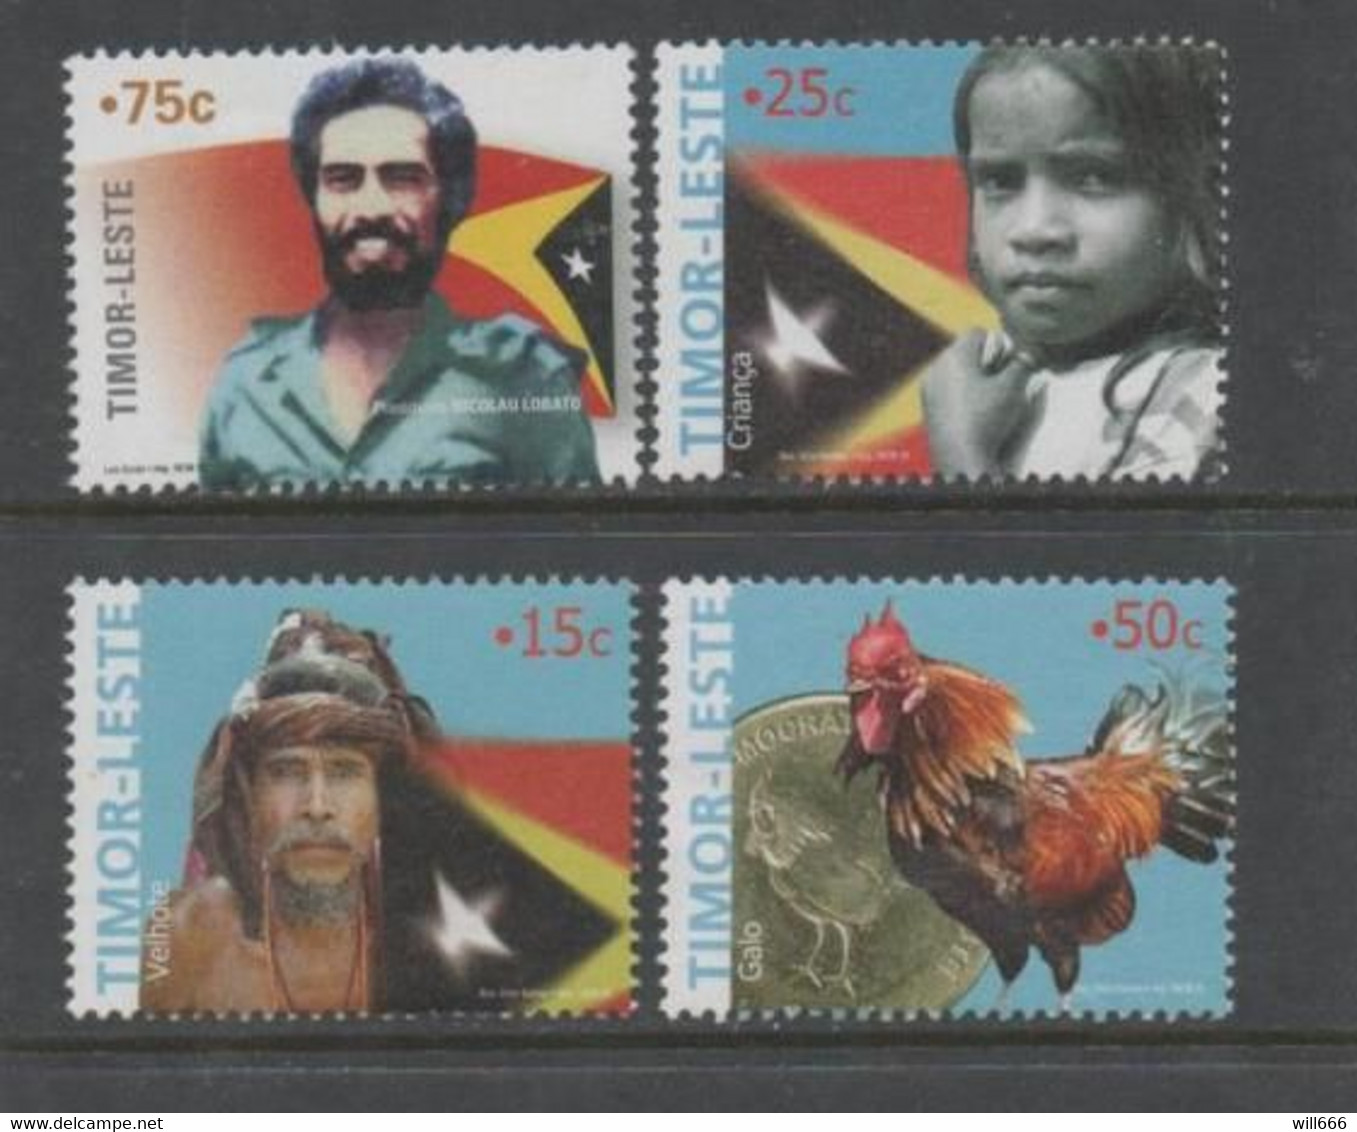 2005 Timor  - Cock, Coin, Flags - Farm